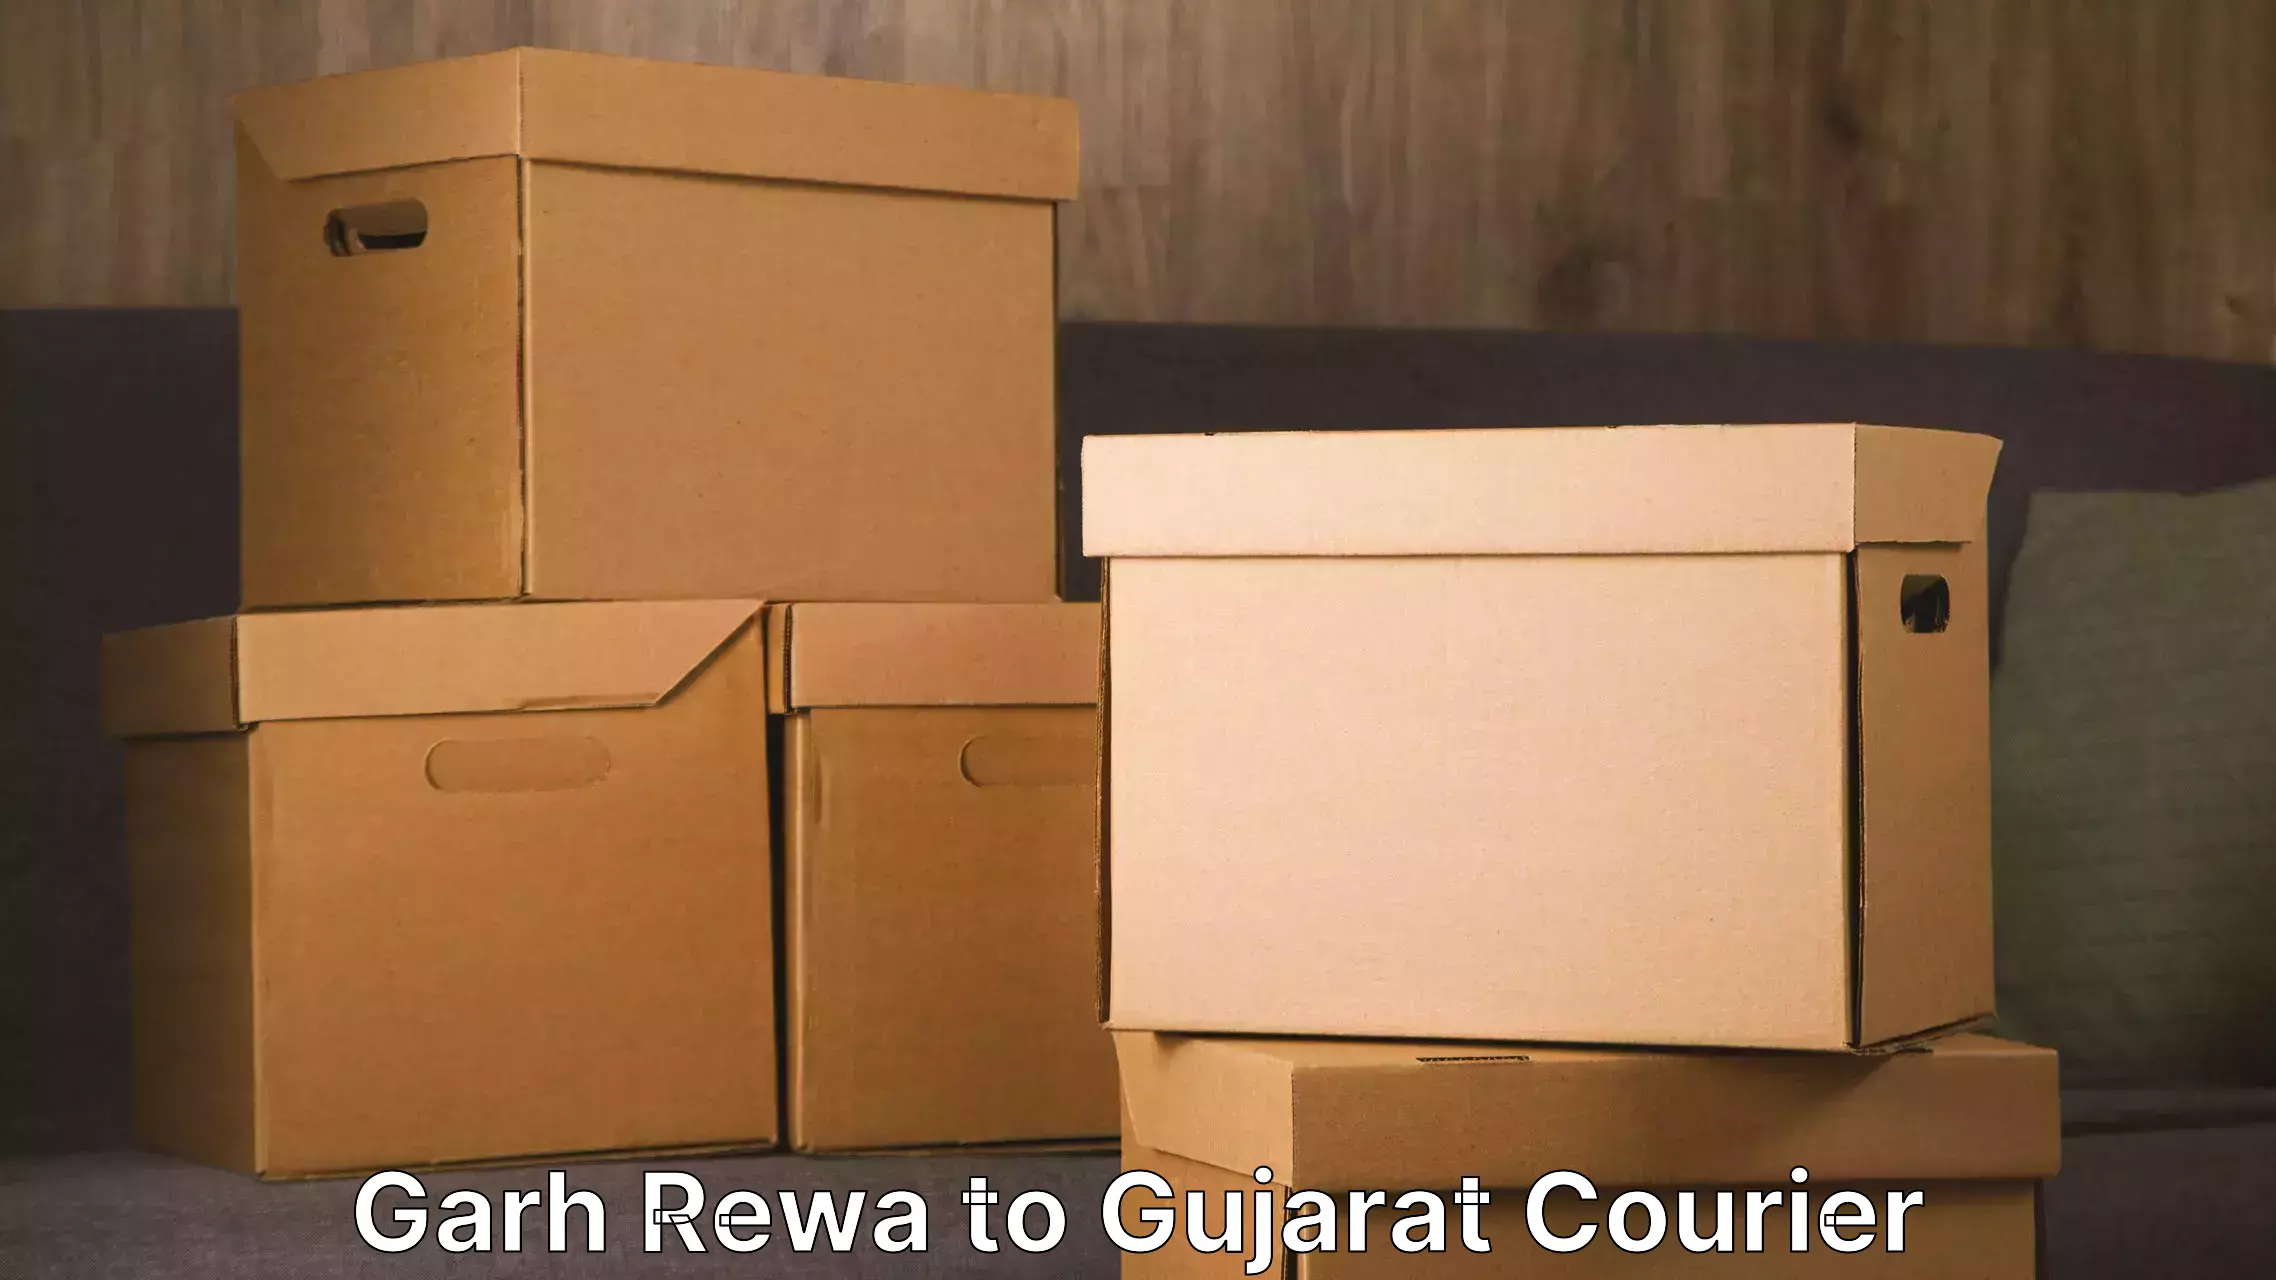 Furniture transport professionals Garh Rewa to Karjan